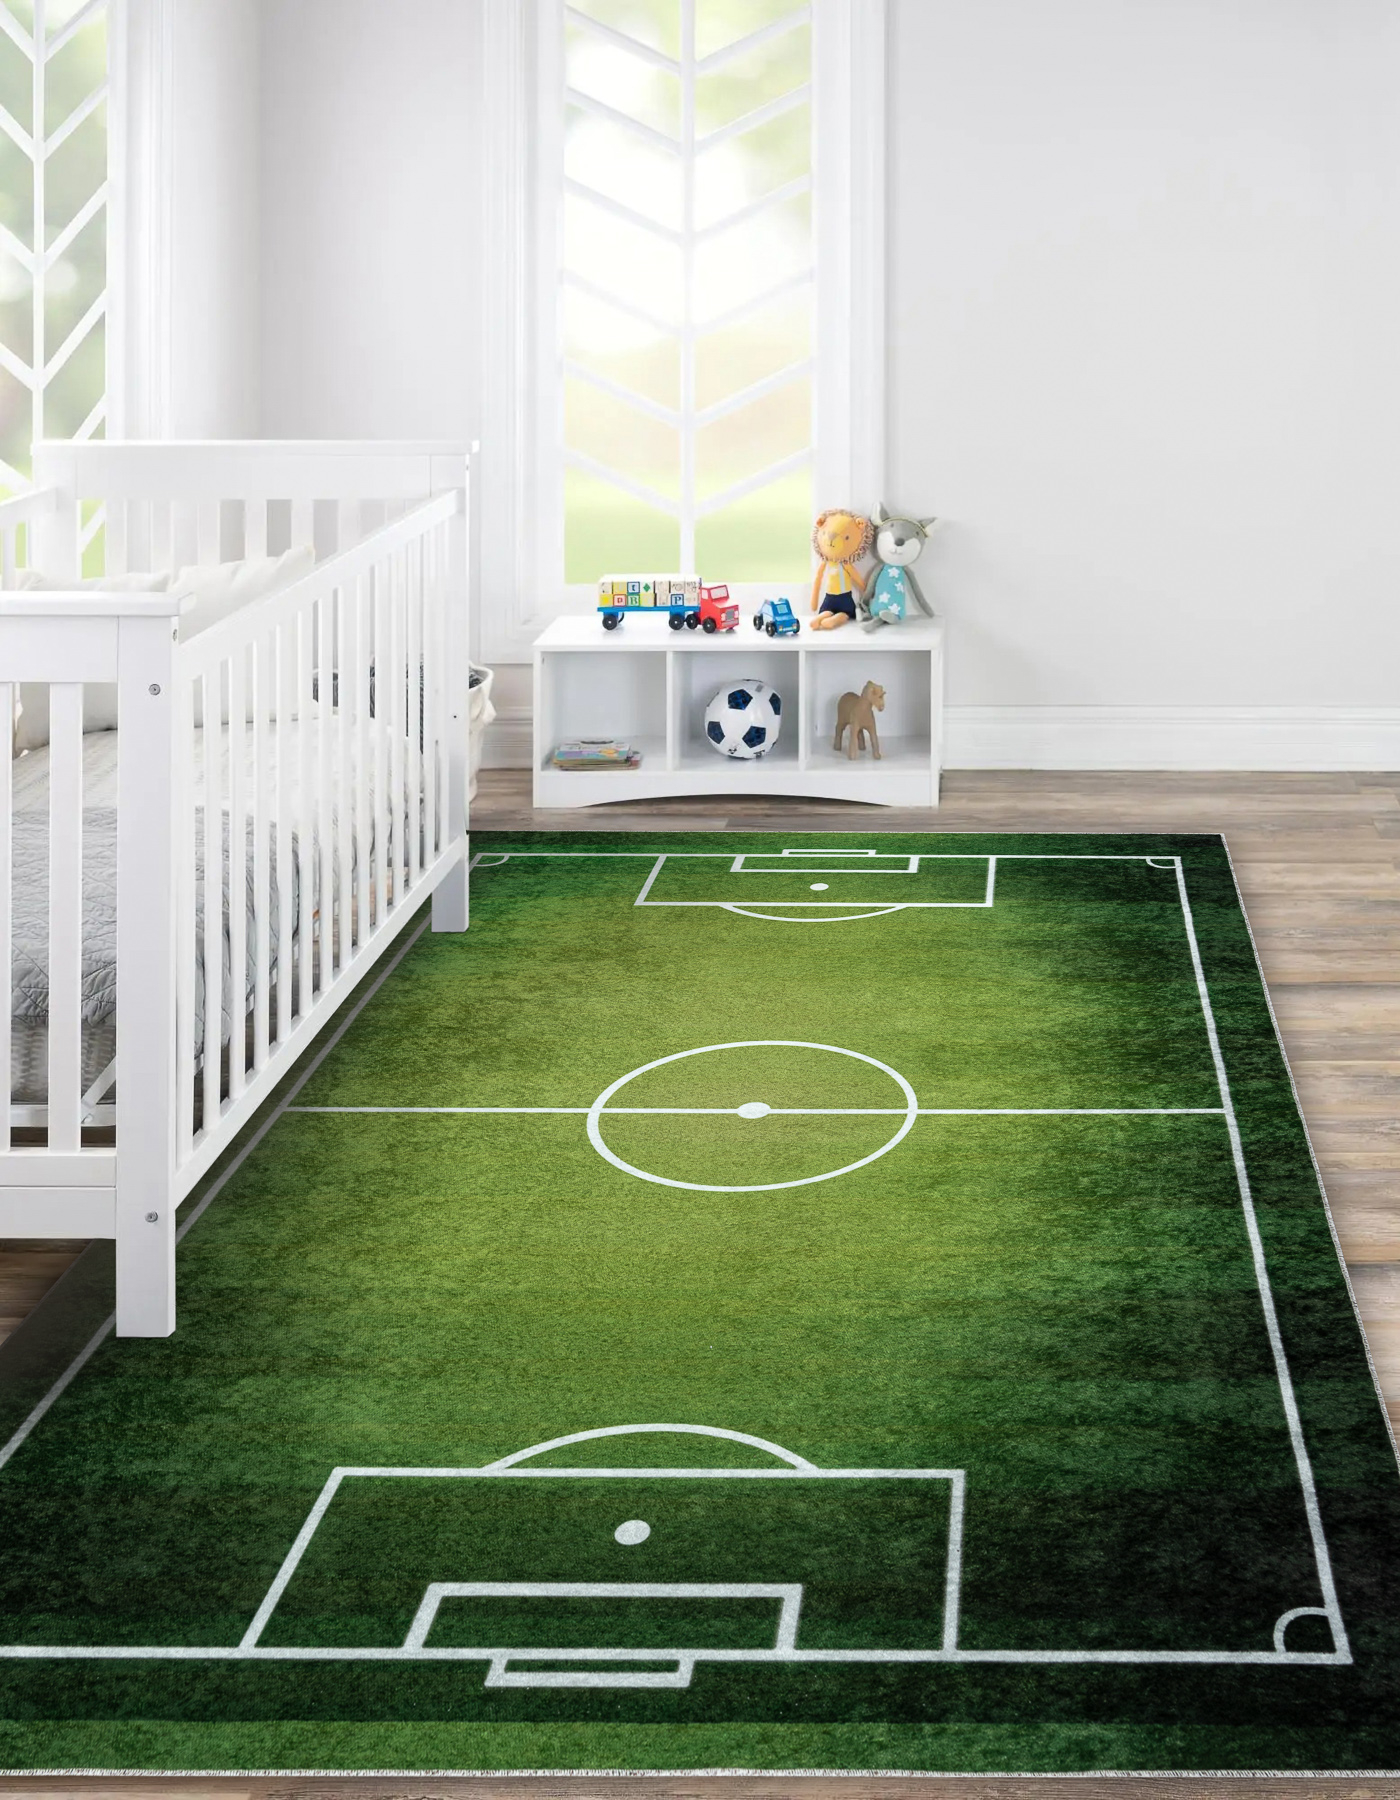 Alfombra con estampado de campo de fútbol, alfombra antideslizante, alfombra  de suelo de campo de fútbol y alfombra de juego decorativa, fútbol verde,  alfombra de fútbol para habitación de niños 